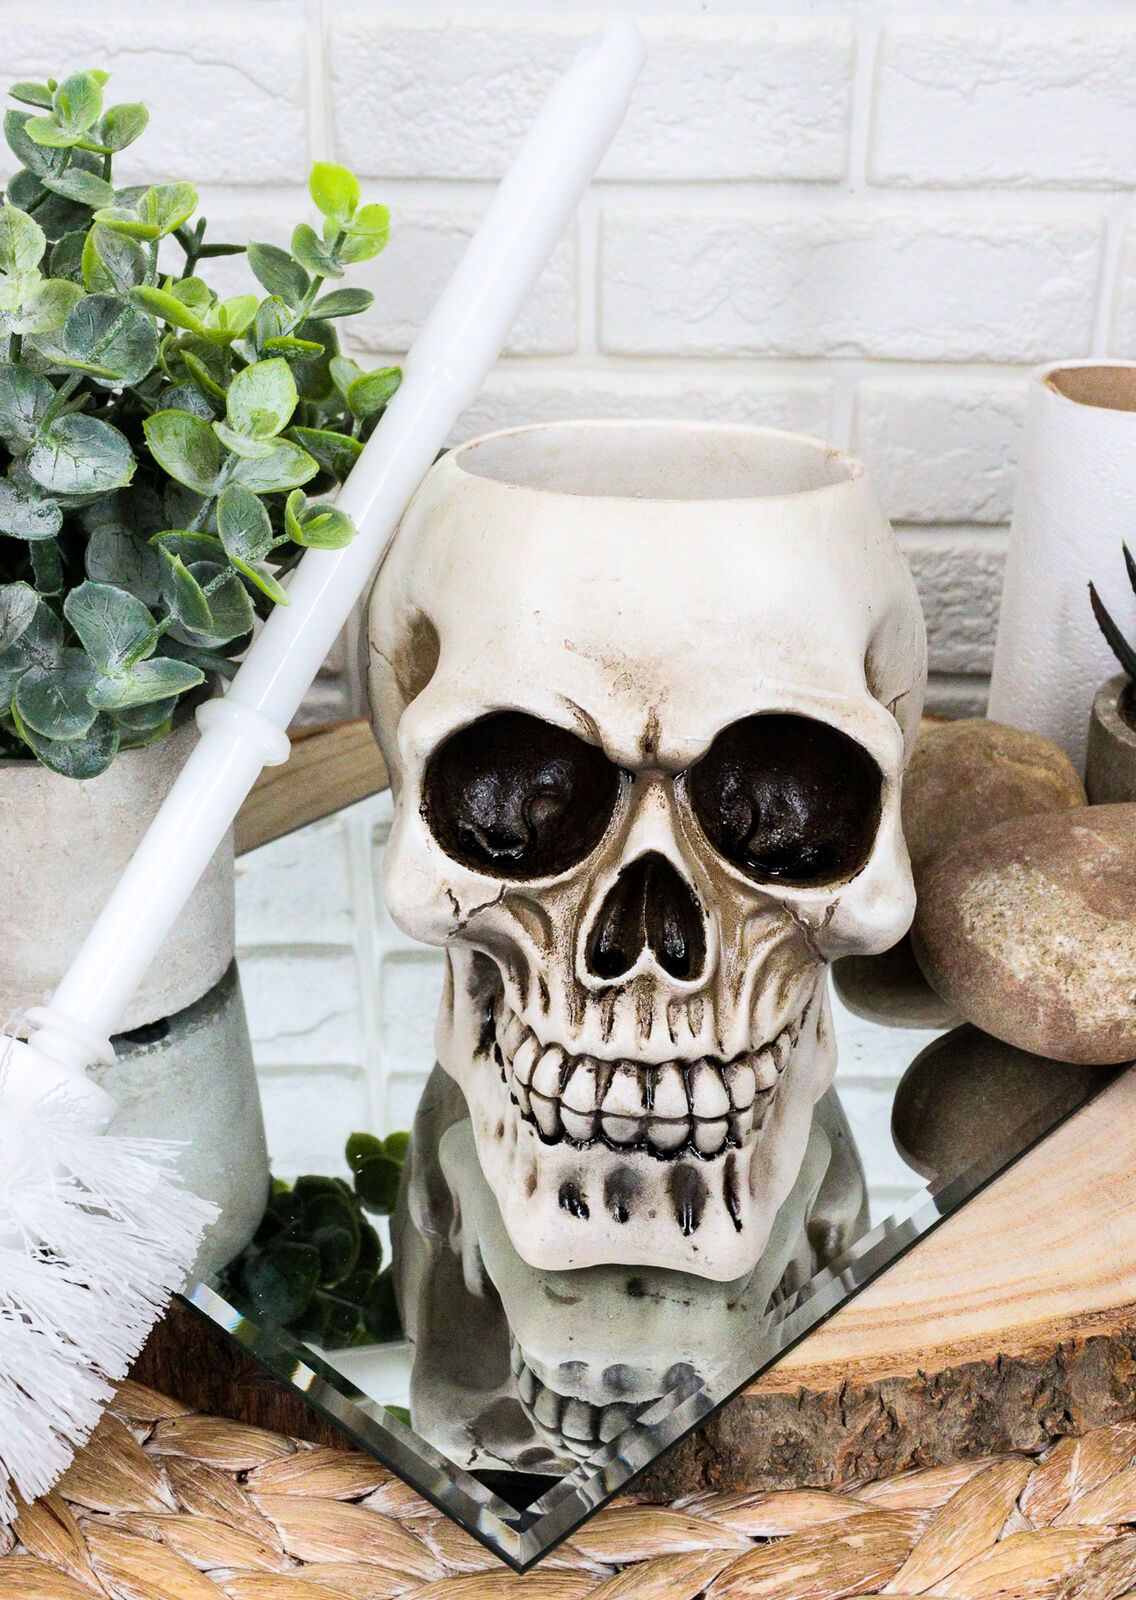 Ebros Gift Skull Head Resin Figurine Toliet Brush Holder Halloween Decor